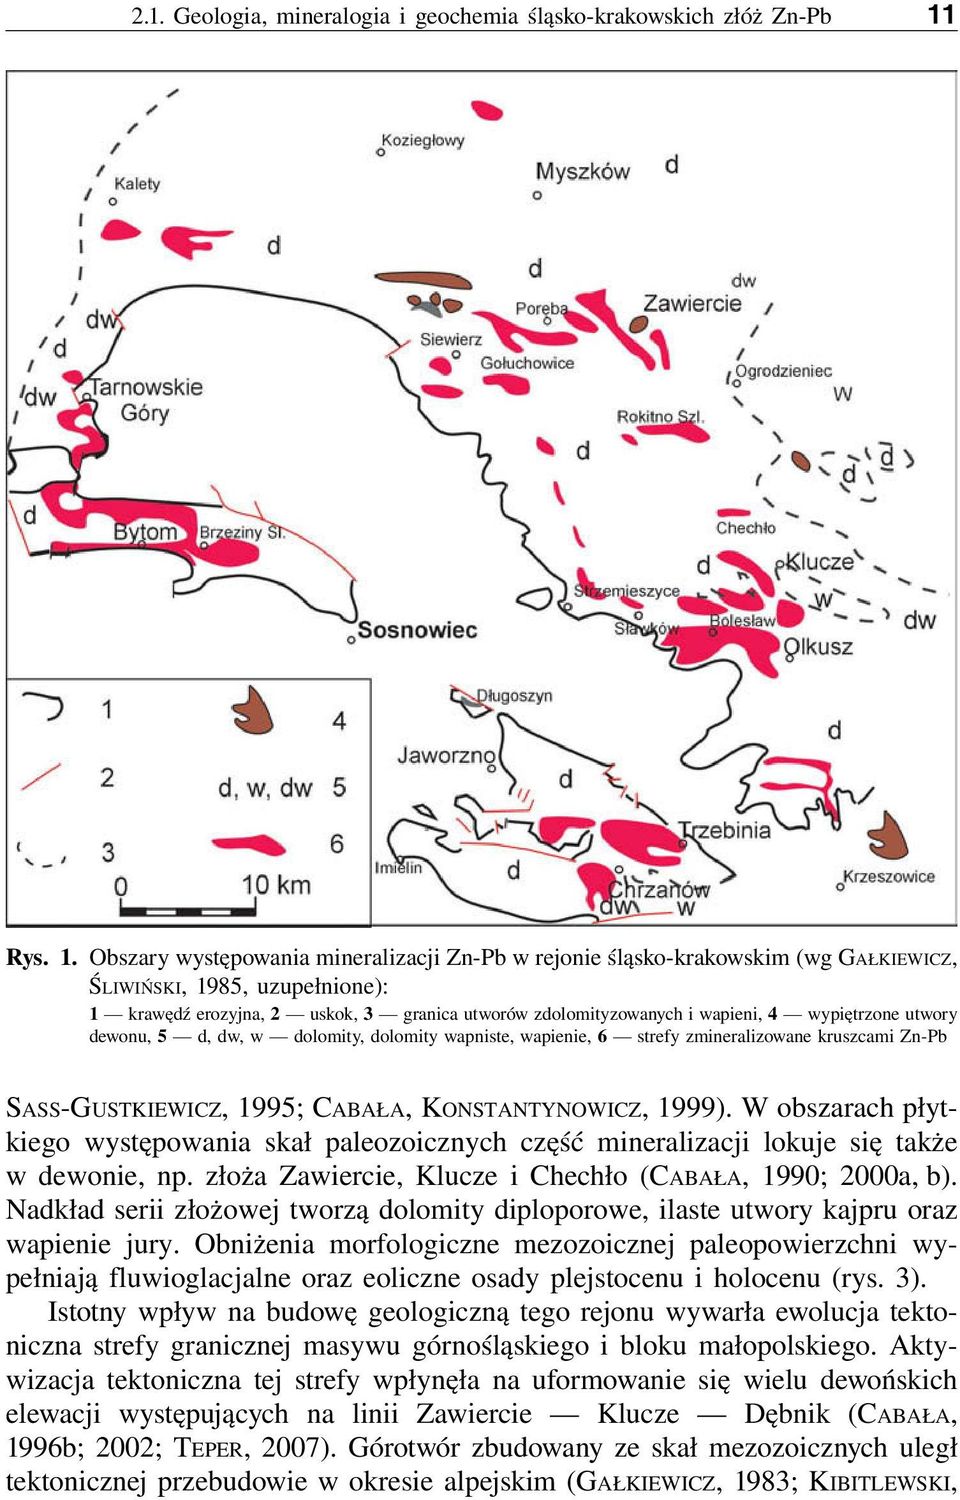 Obszary występowania mineralizacji Zn-Pb w rejonie śląsko-krakowskim (wg GAŁKIEWICZ, ŚLIWIŃSKI, 1985, uzupełnione): 1 krawędź erozyjna, 2 uskok, 3 granica utworów zdolomityzowanych i wapieni, 4